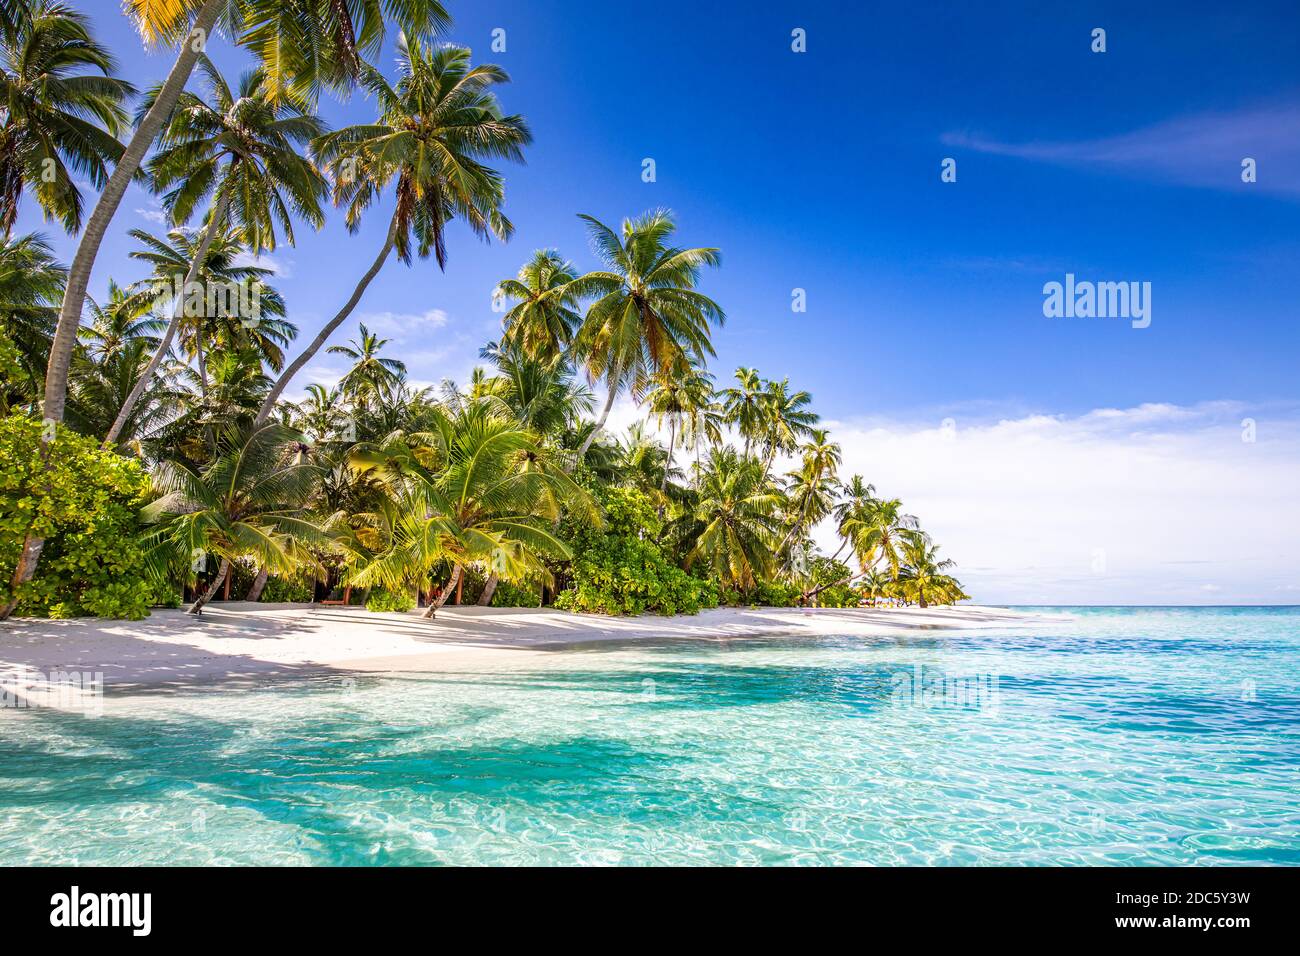 Plage tranquille. Paysage tropical ensoleillé de plage exotique. Concept vacances d'été. Destination de voyage de luxe, nature idyllique, palmiers, mer Banque D'Images